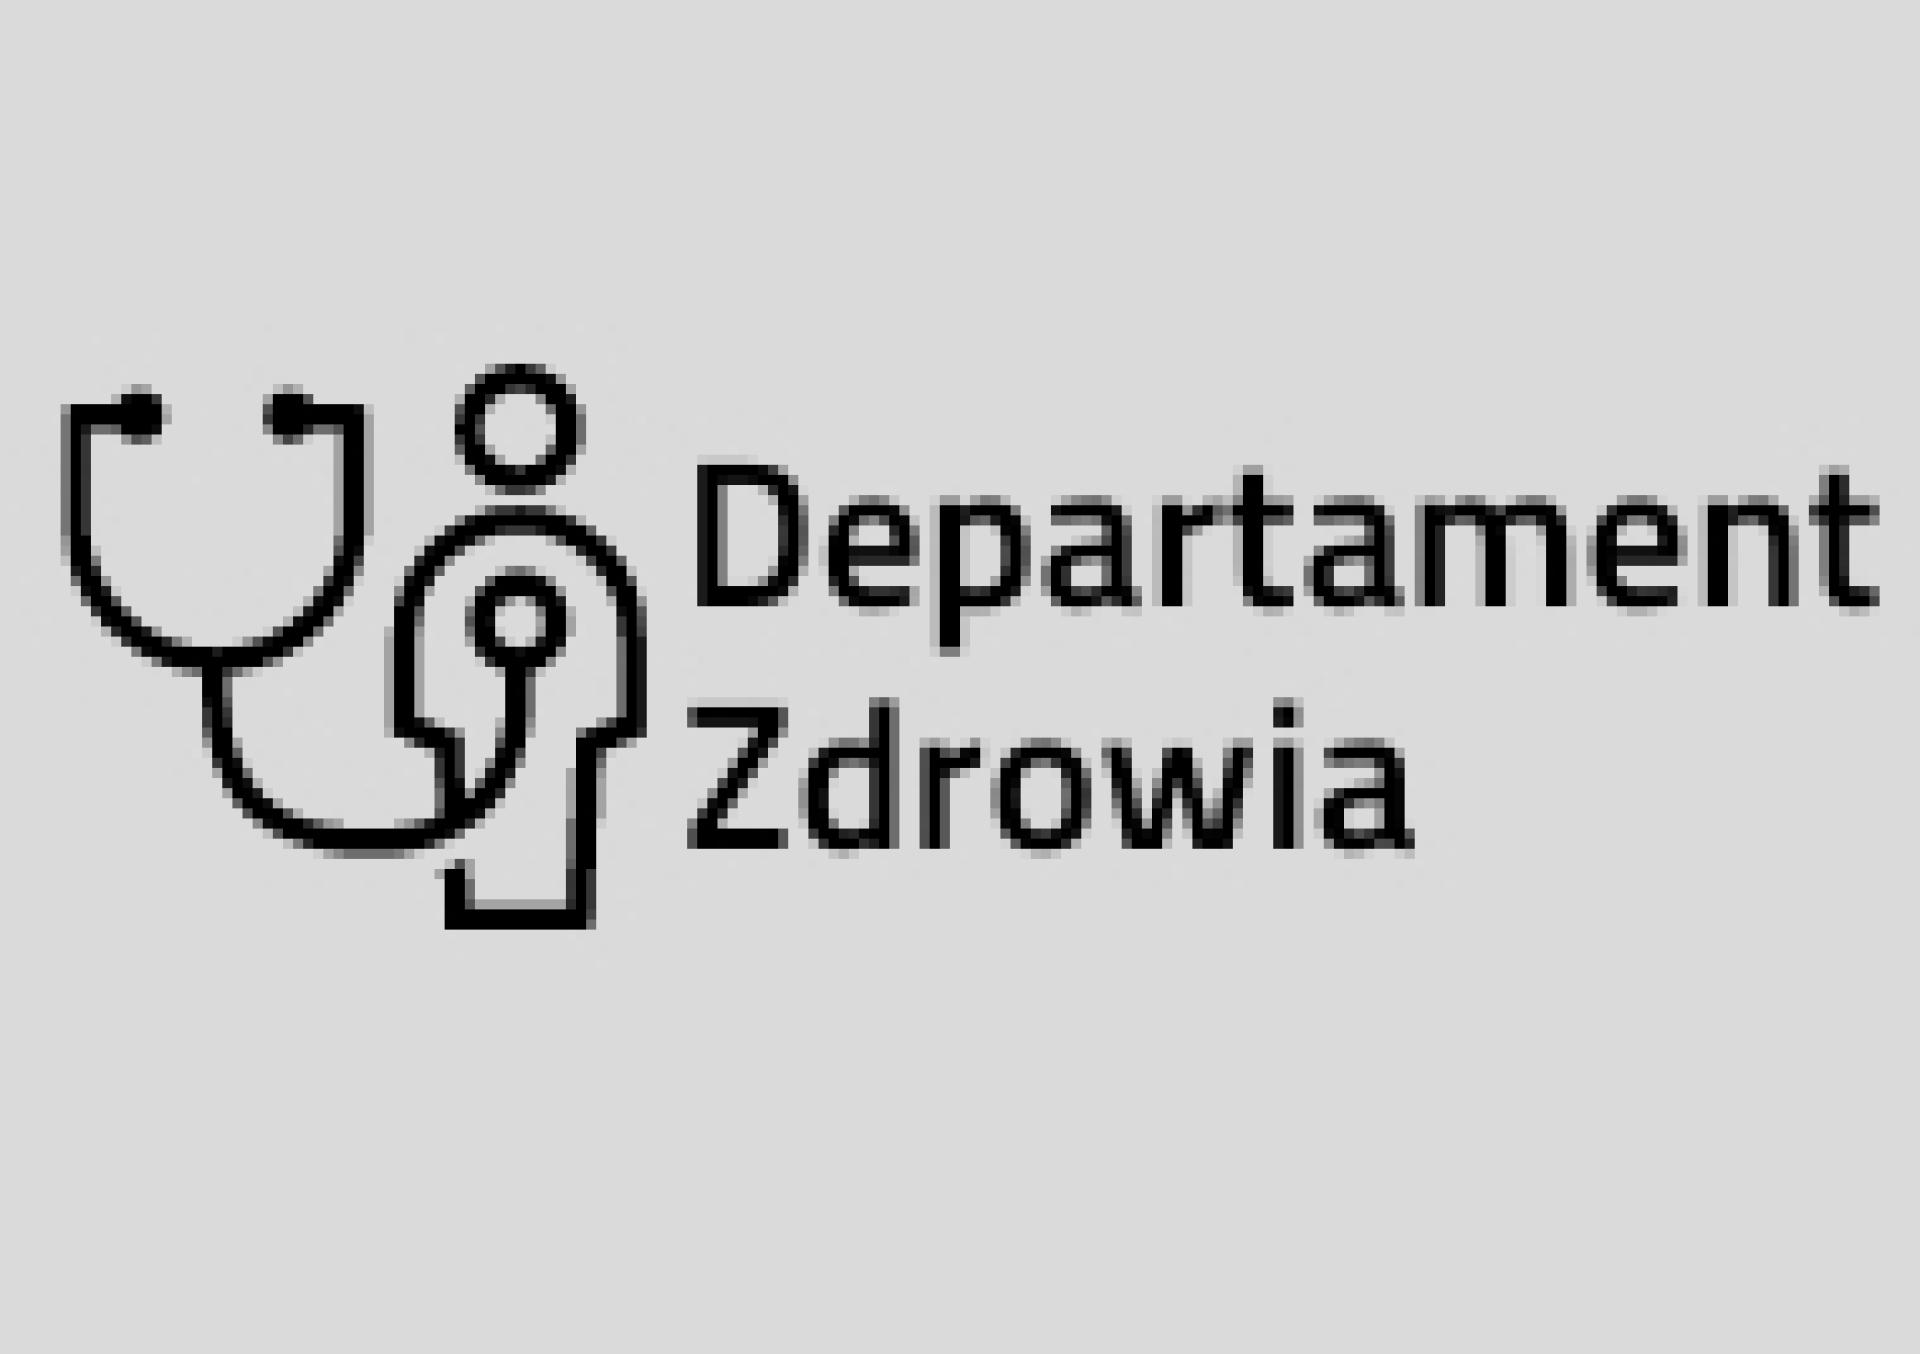 Konsultacje projektu uchwały Sejmiku zmieniającej uchwałę w sprawie nadania statutu Wielkopolskiemu Centrum Pulmonologii i Torakochirurgii - zobacz więcej